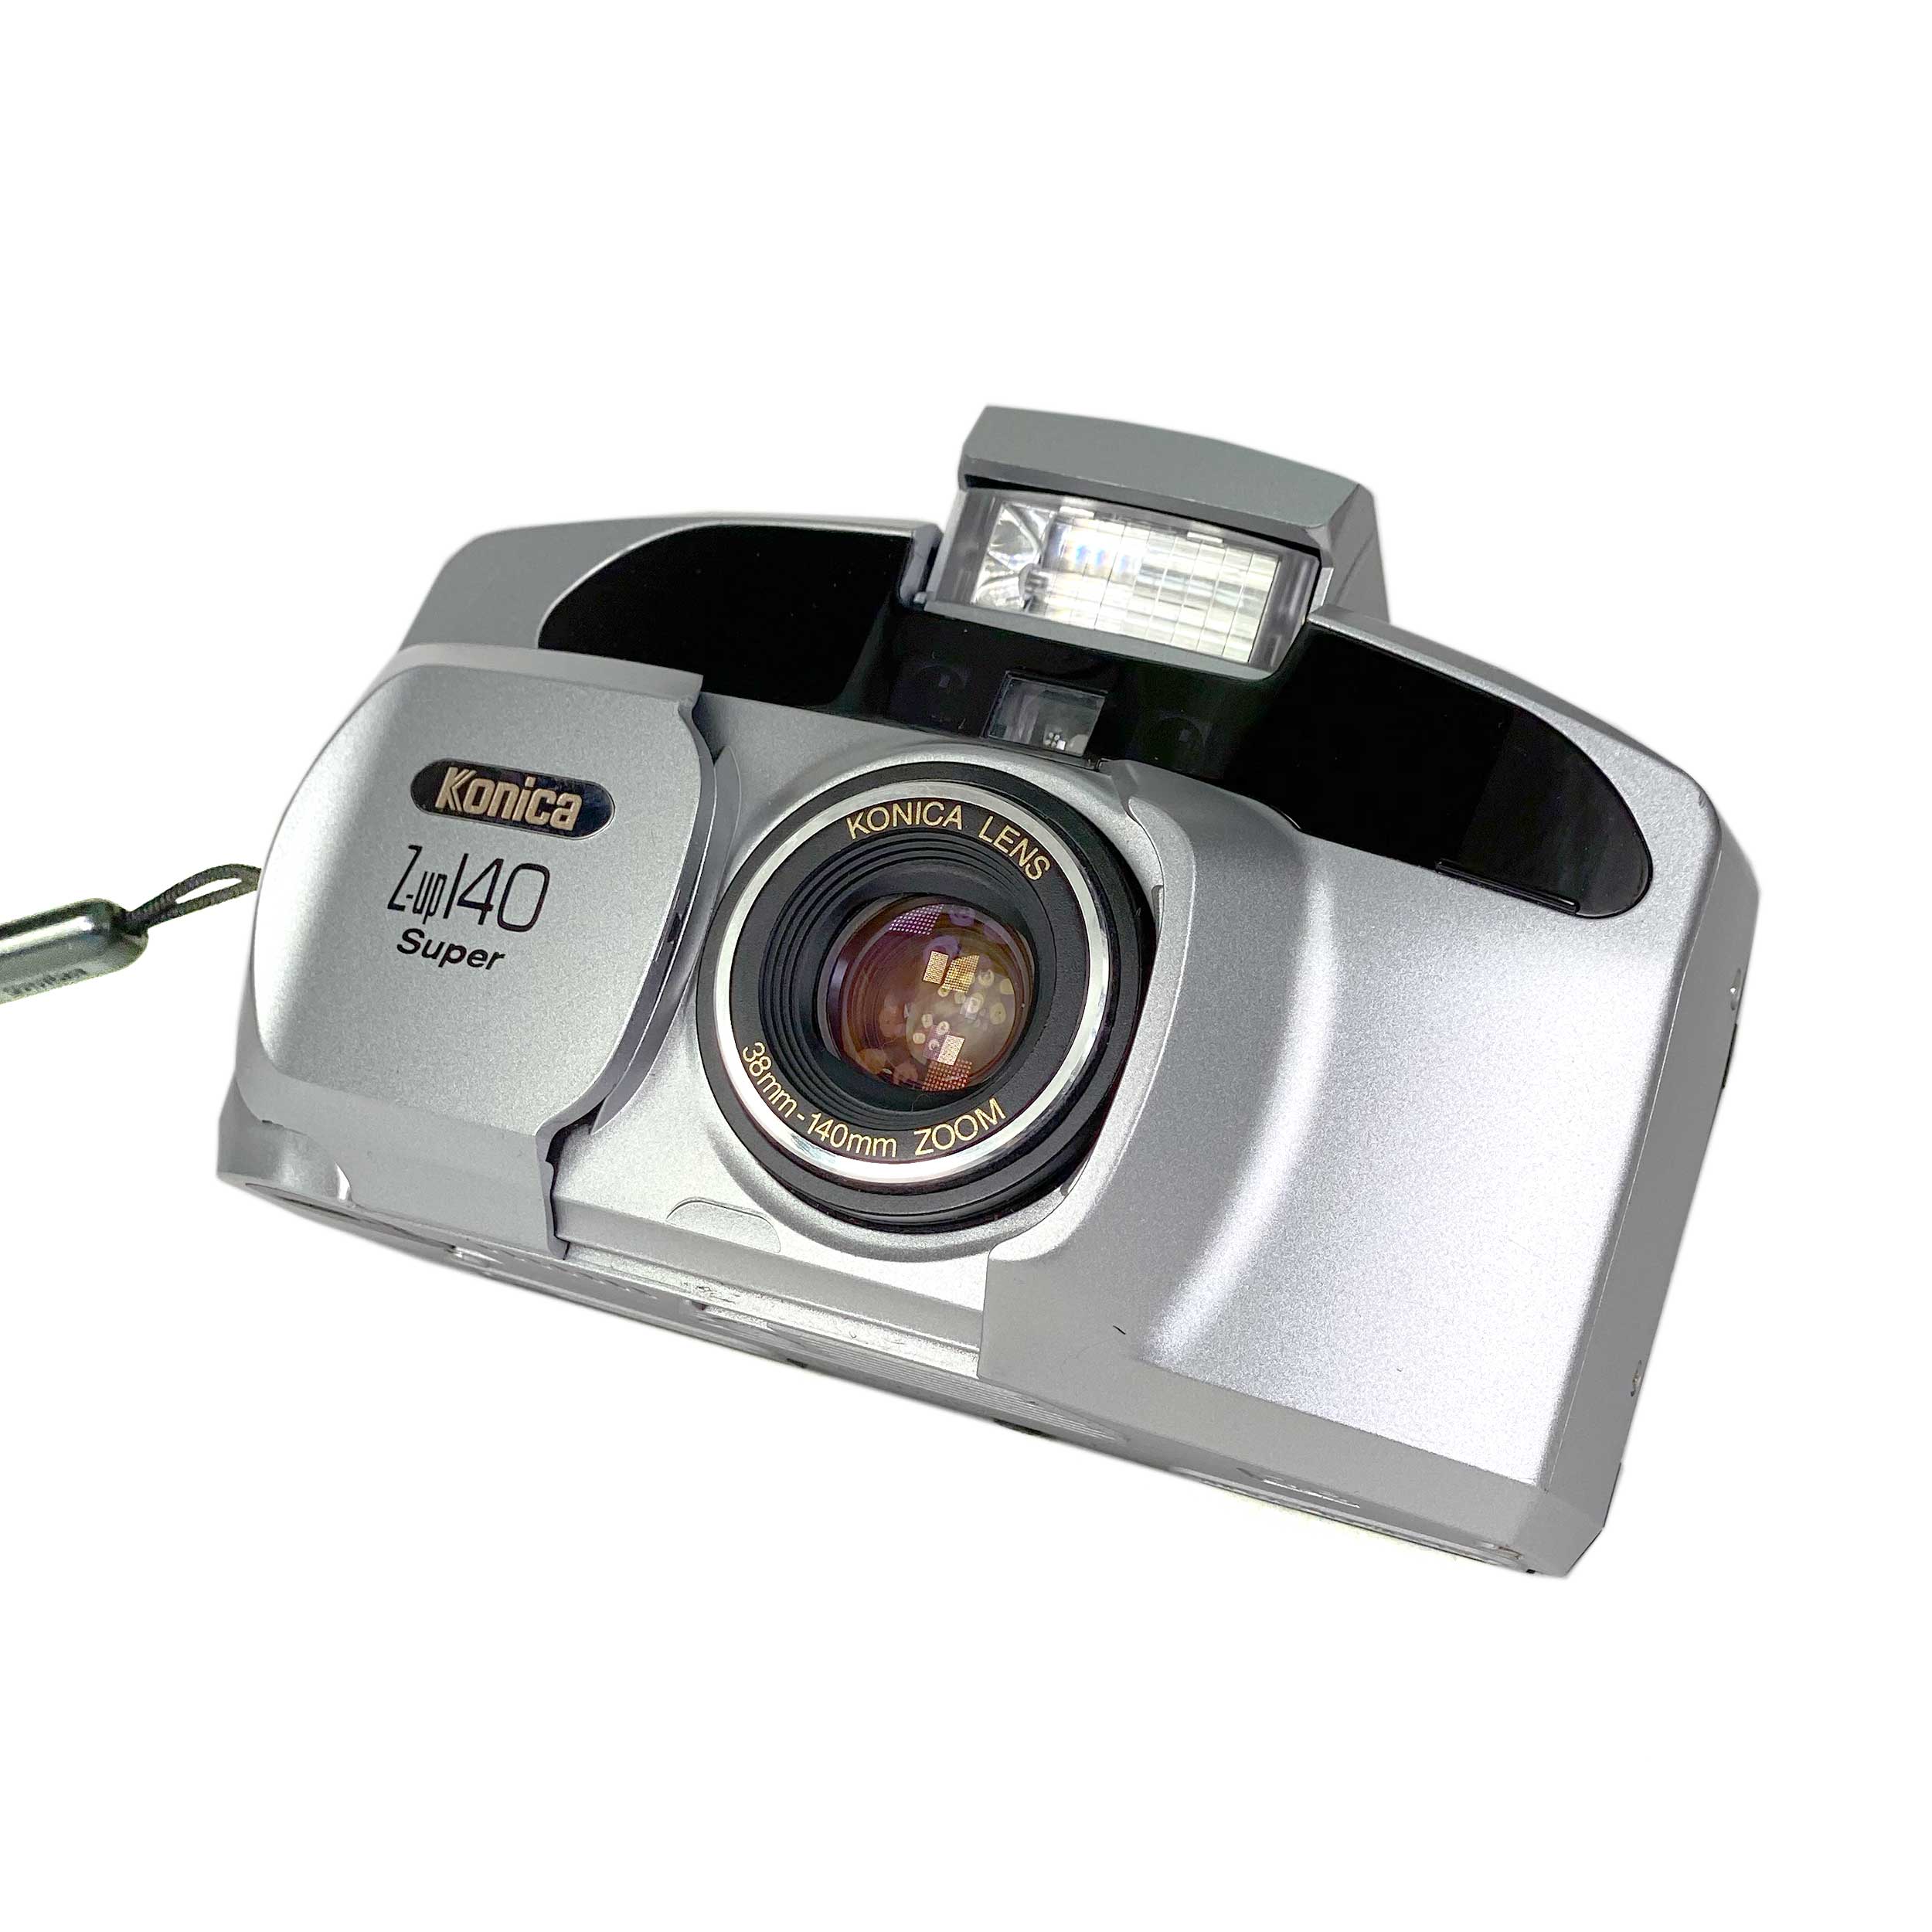 Konica Z-Up 140 Super – Retro Camera Shop